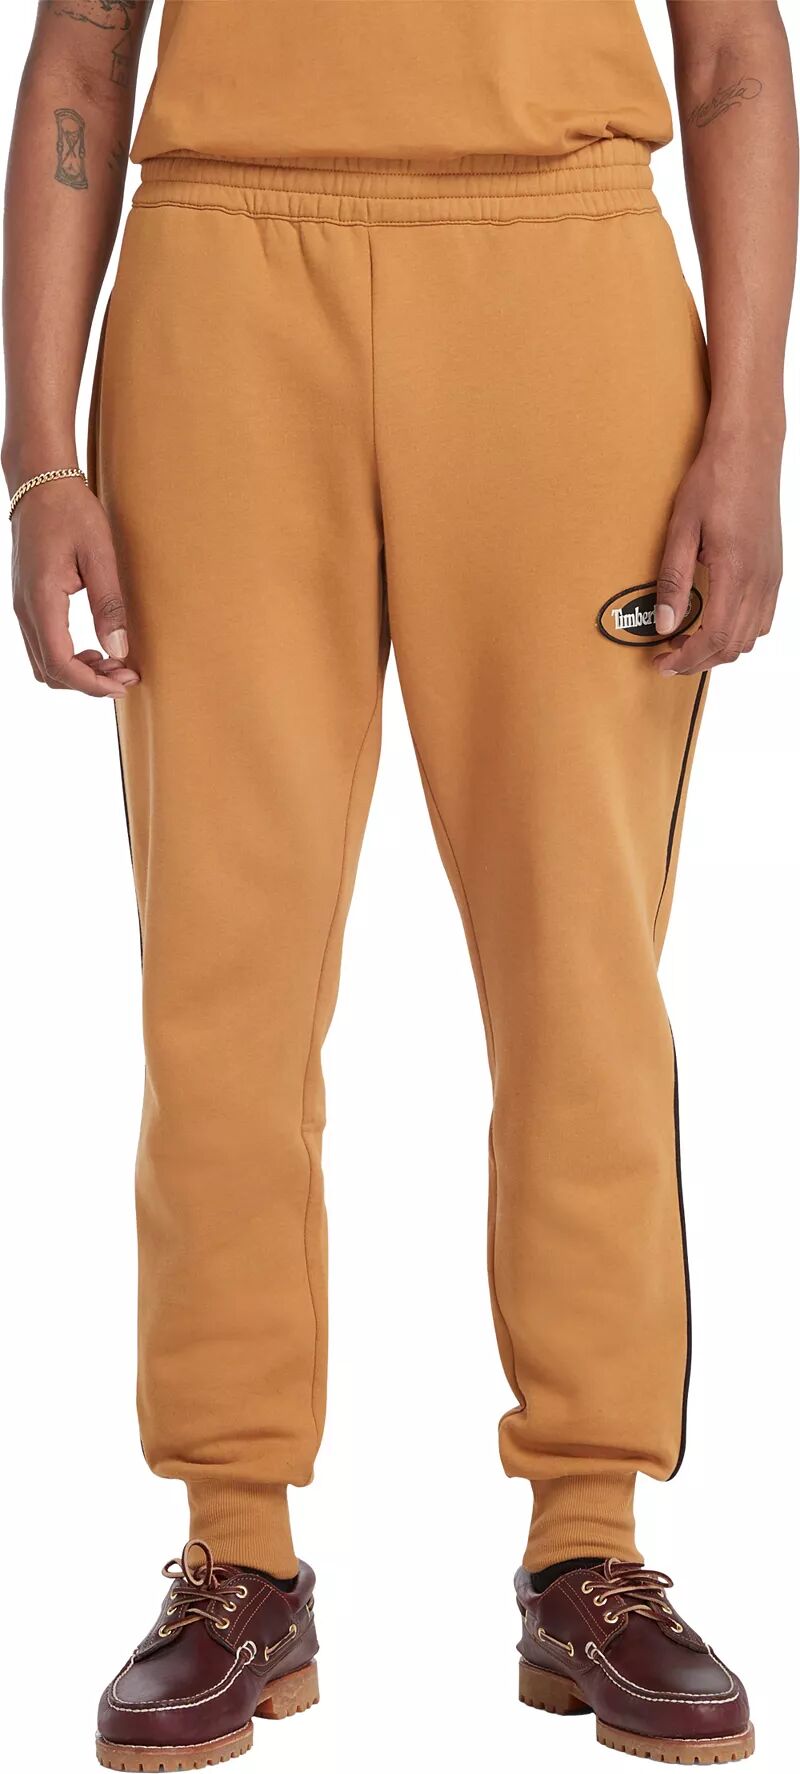 Мужские спортивные штаны Timberland с овальным логотипом